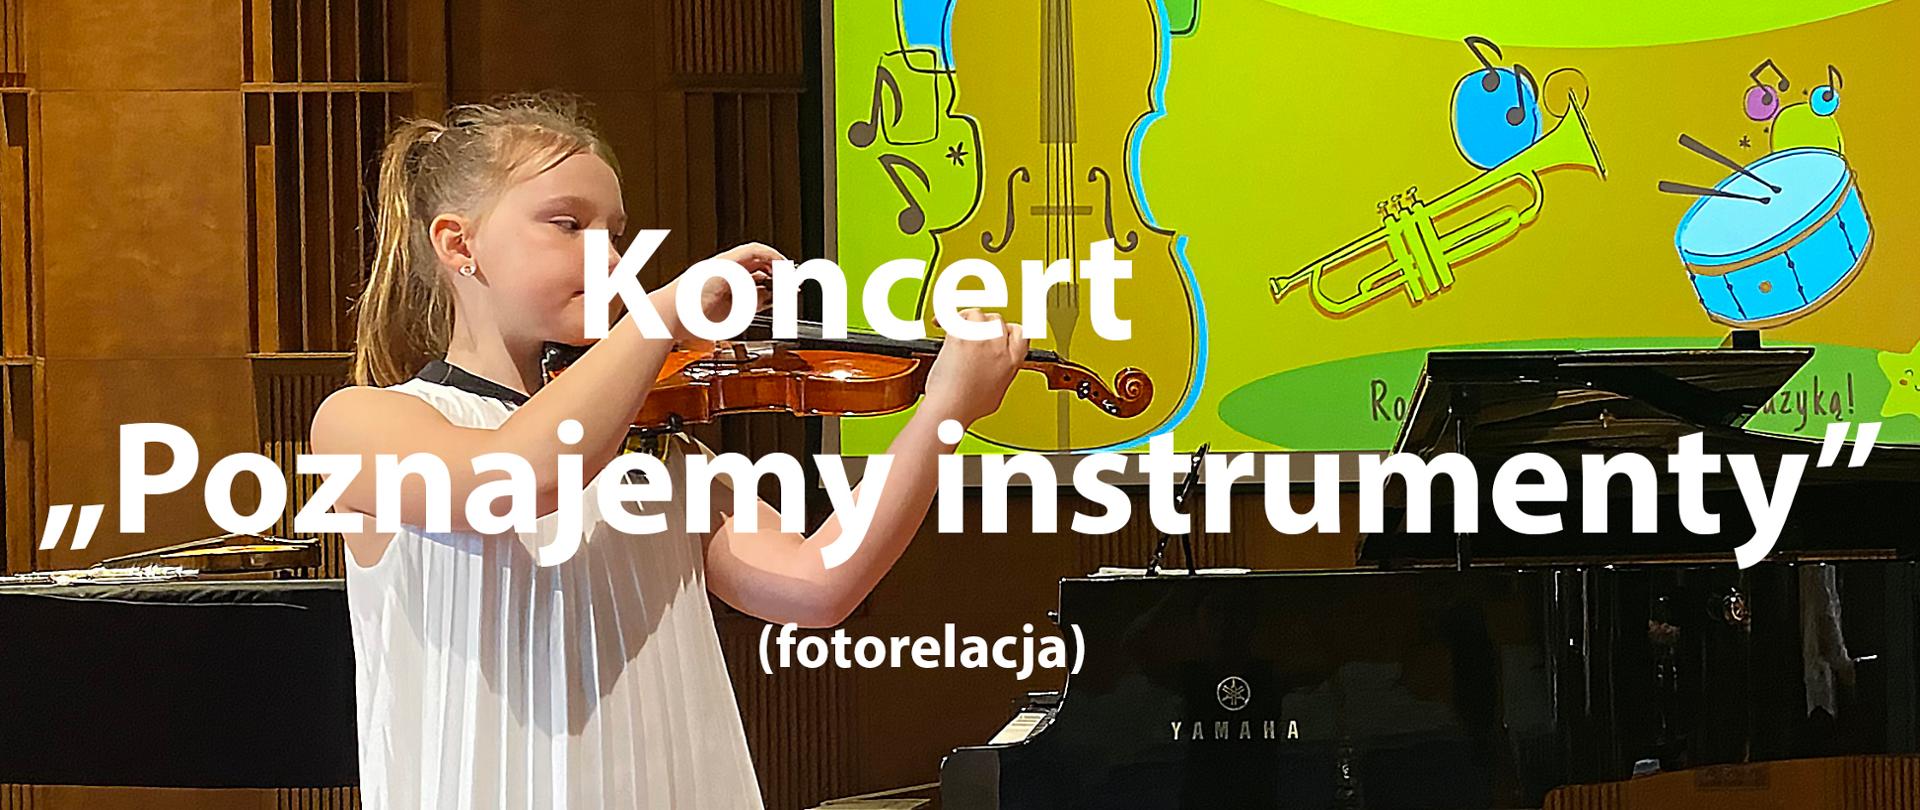 Na tle zdjęcia skrzypaczki napis: Koncert - "Poznajemy instrumenty" (fotorelacja).